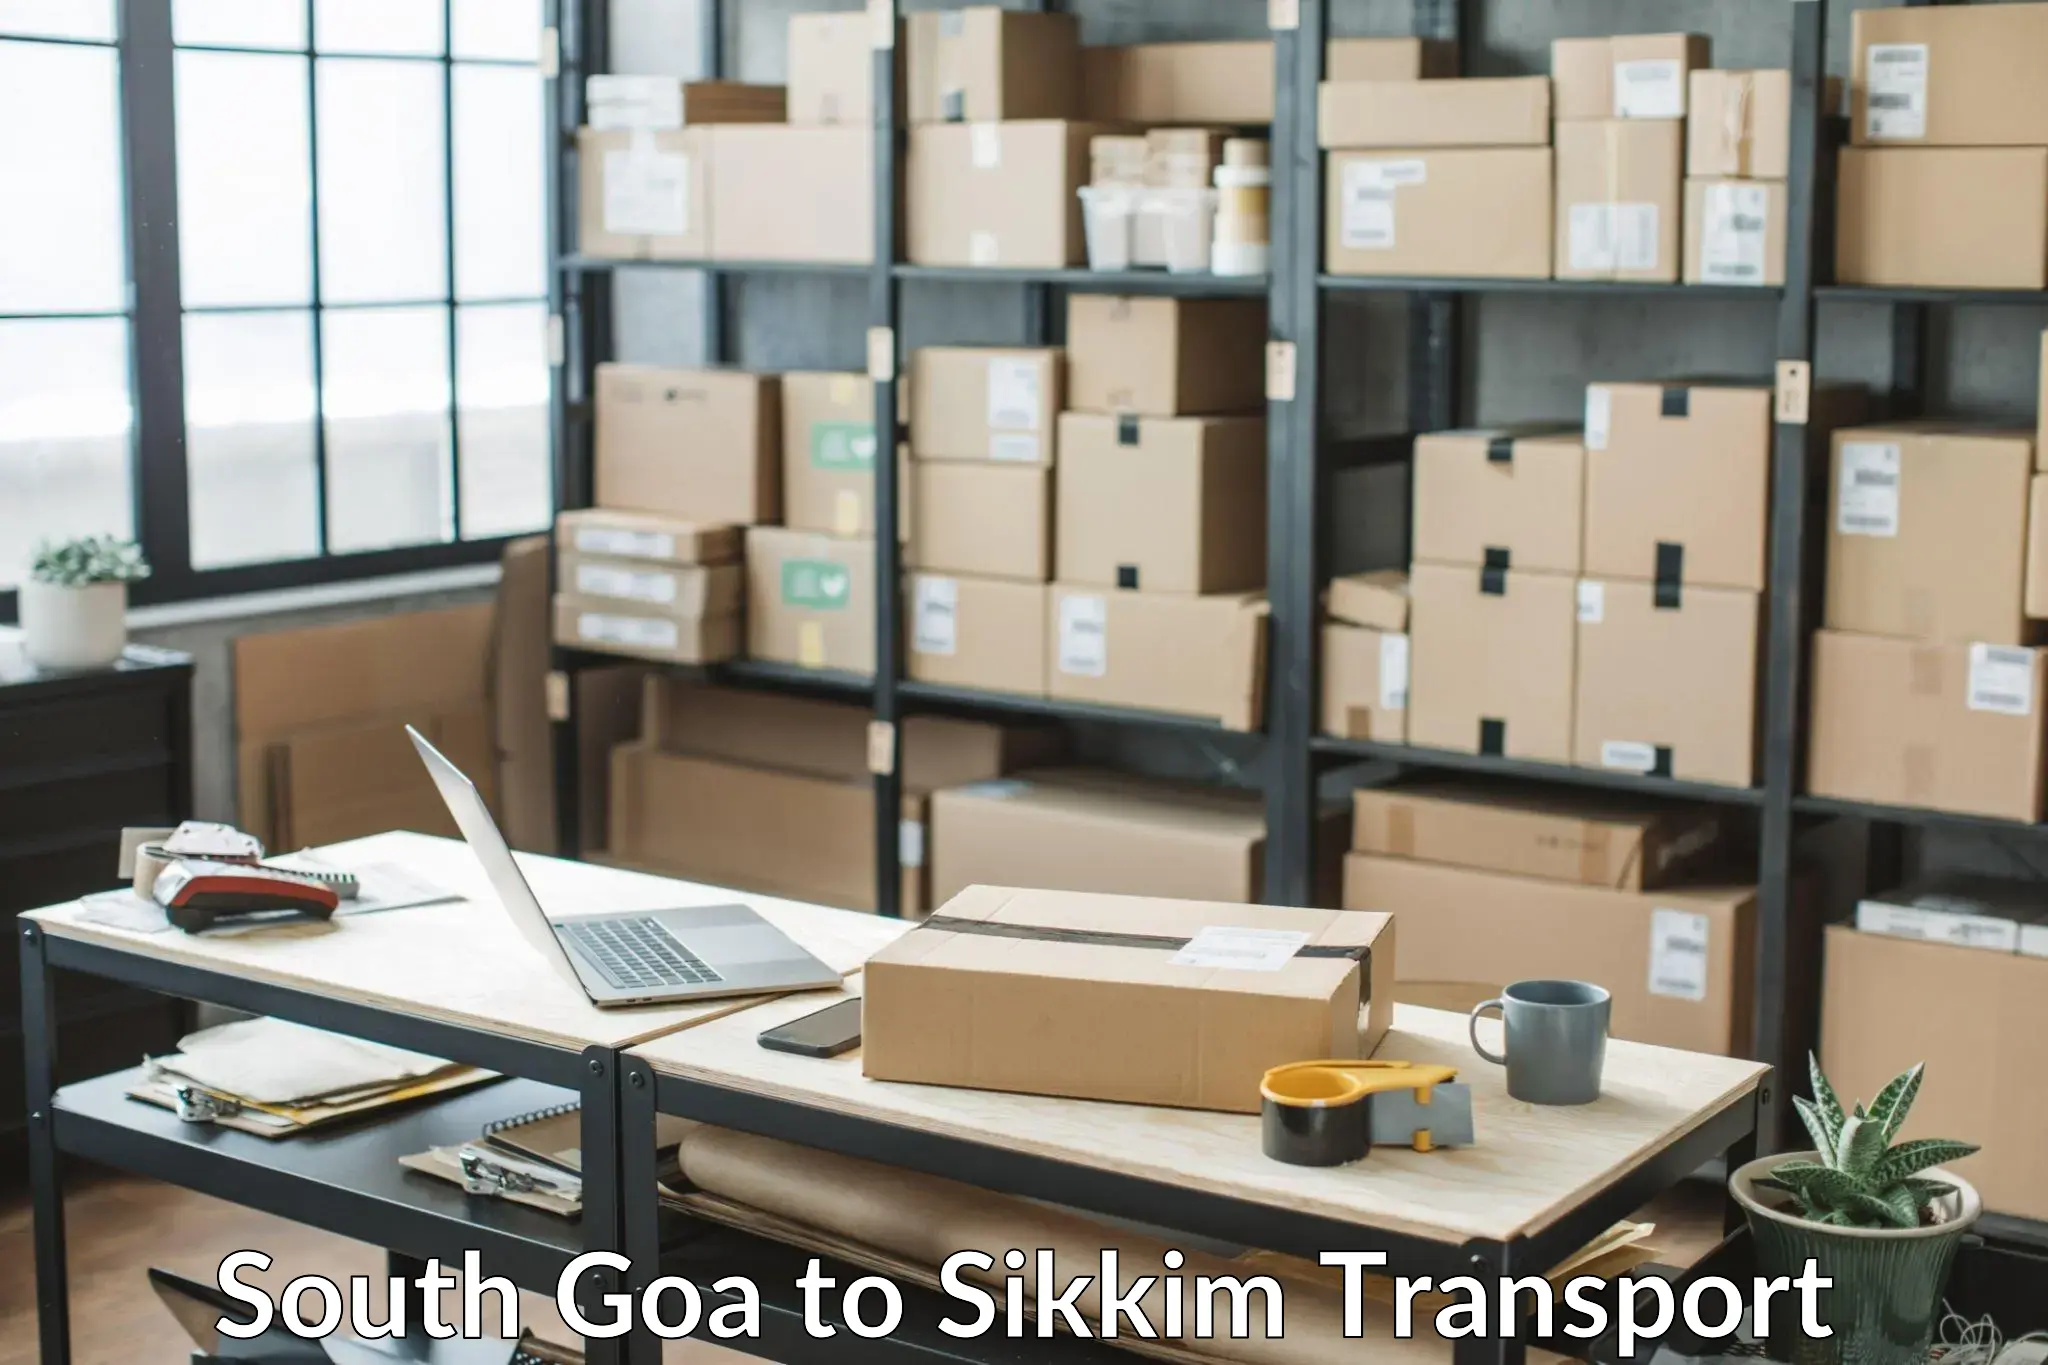 Two wheeler parcel service South Goa to Gangtok